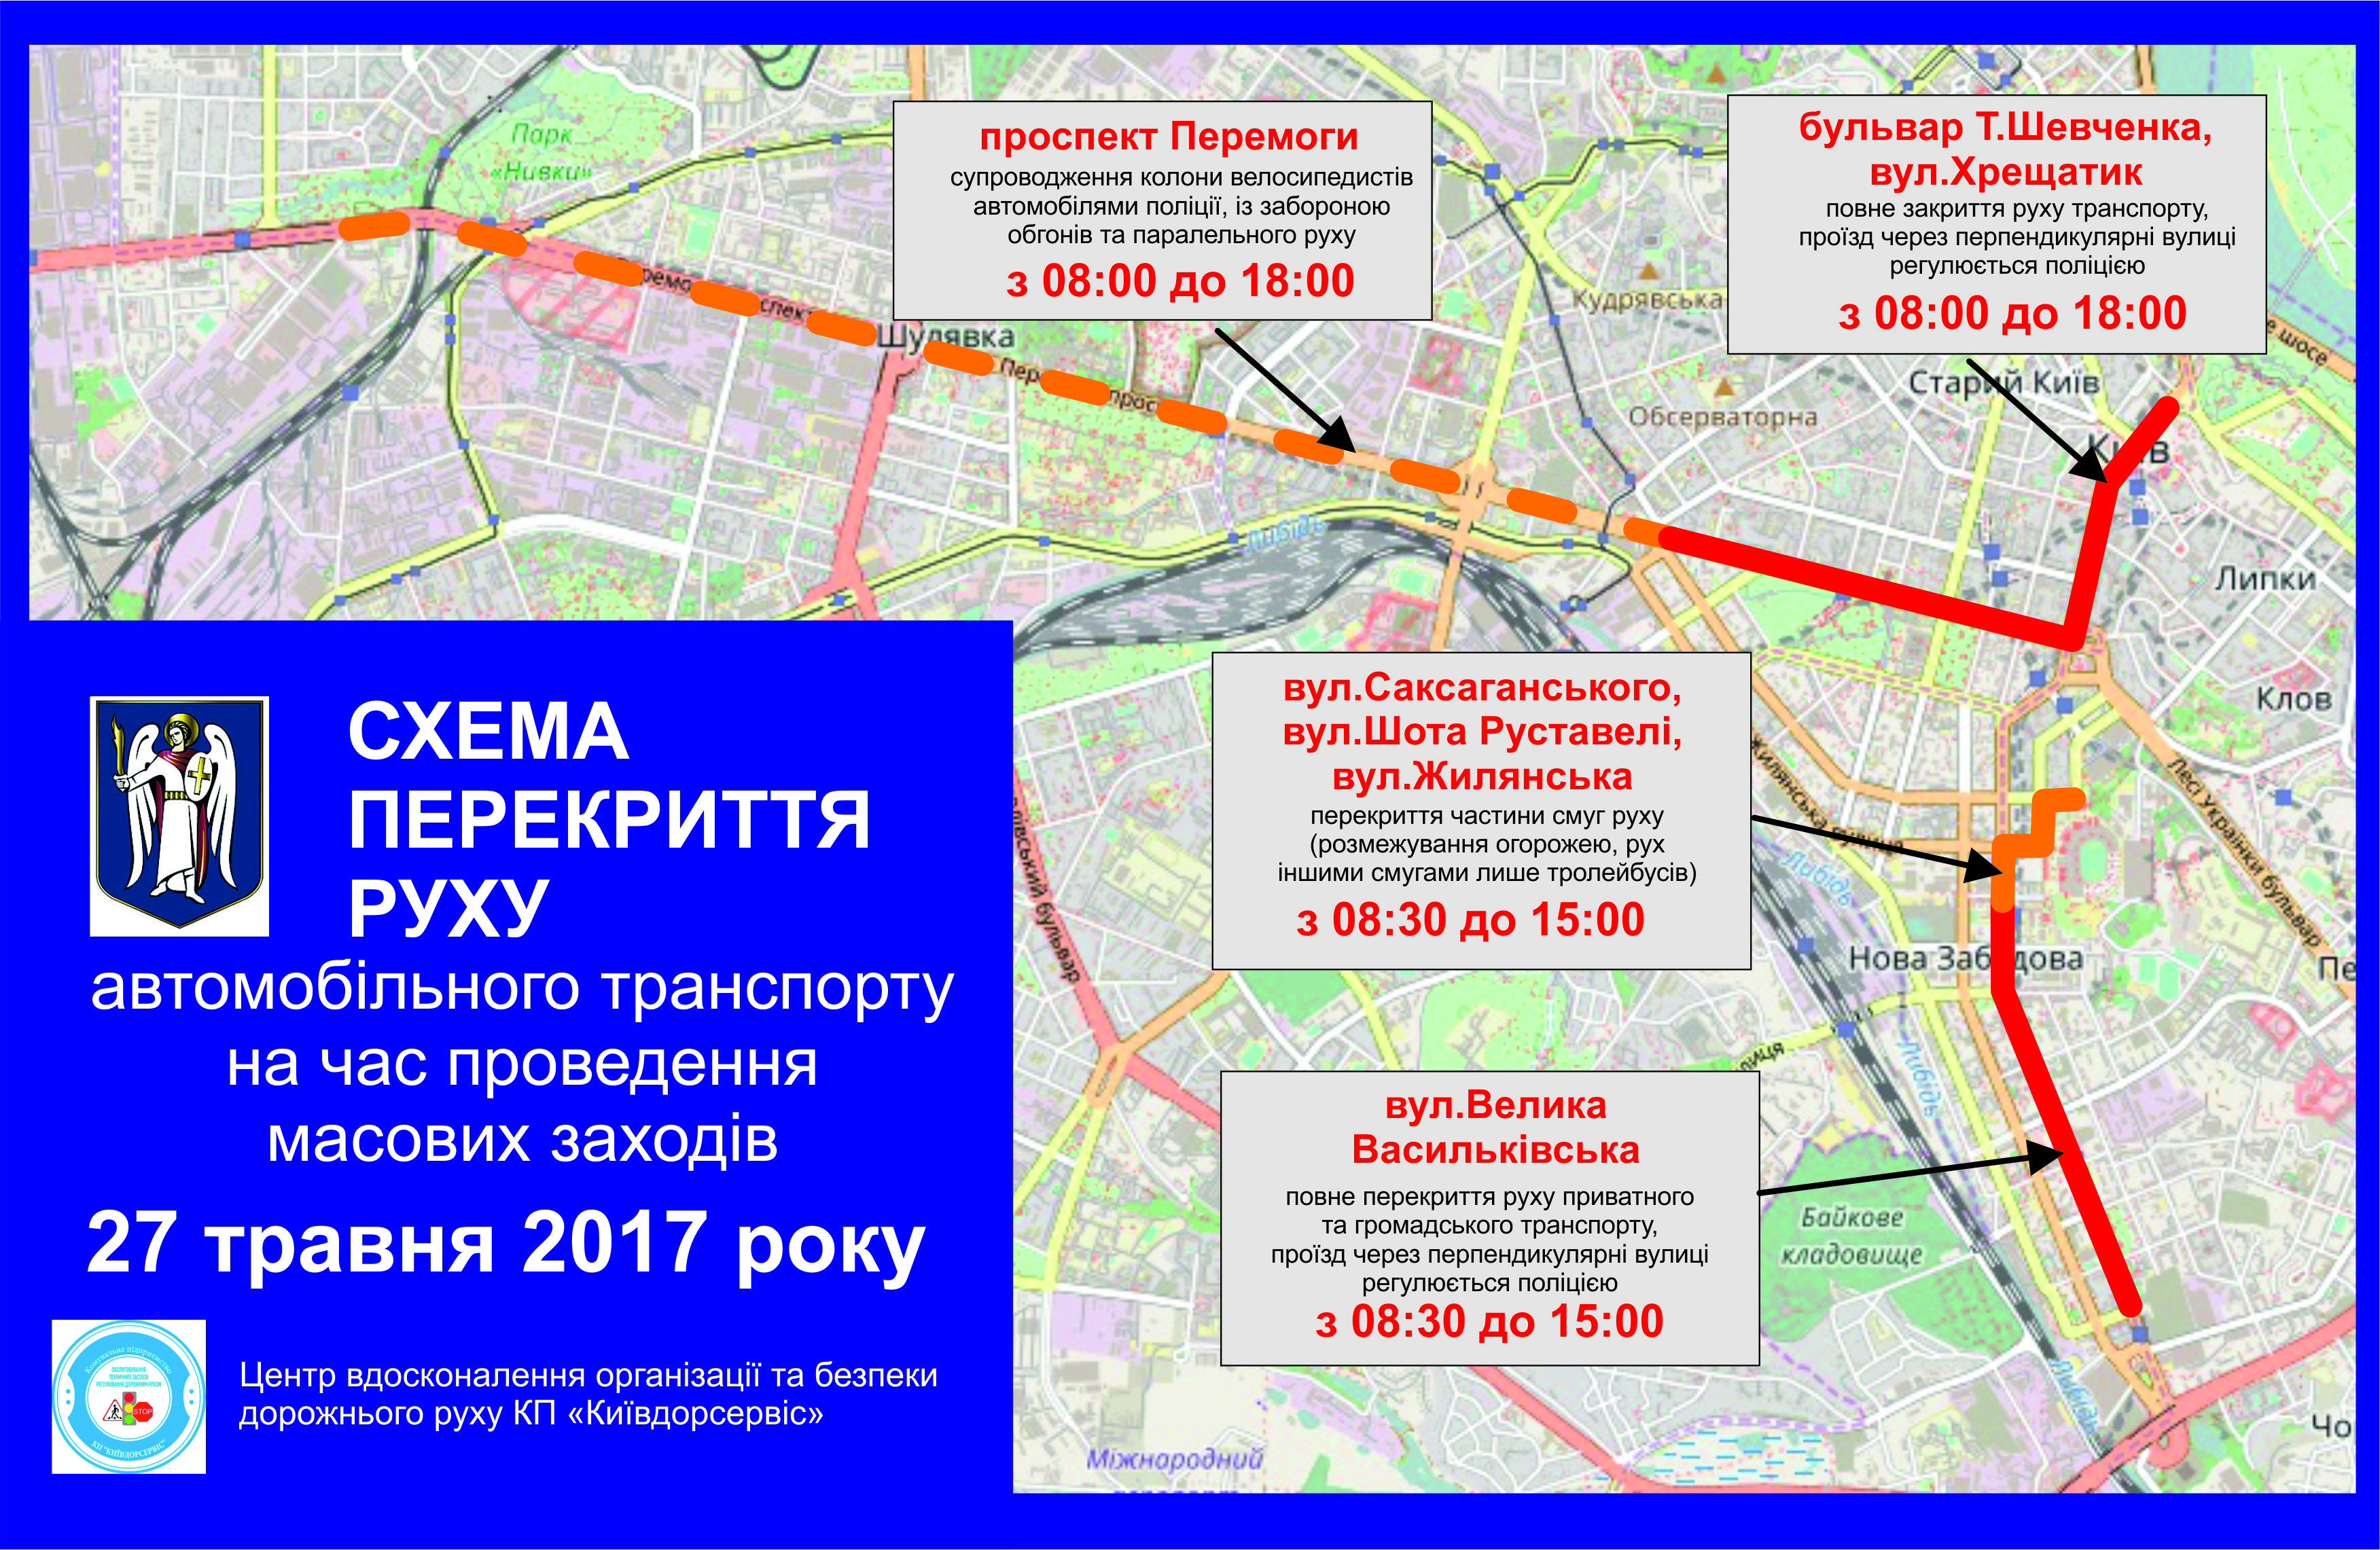 Сегодня в Киеве перекрыты дороги из-за соревнований: карта